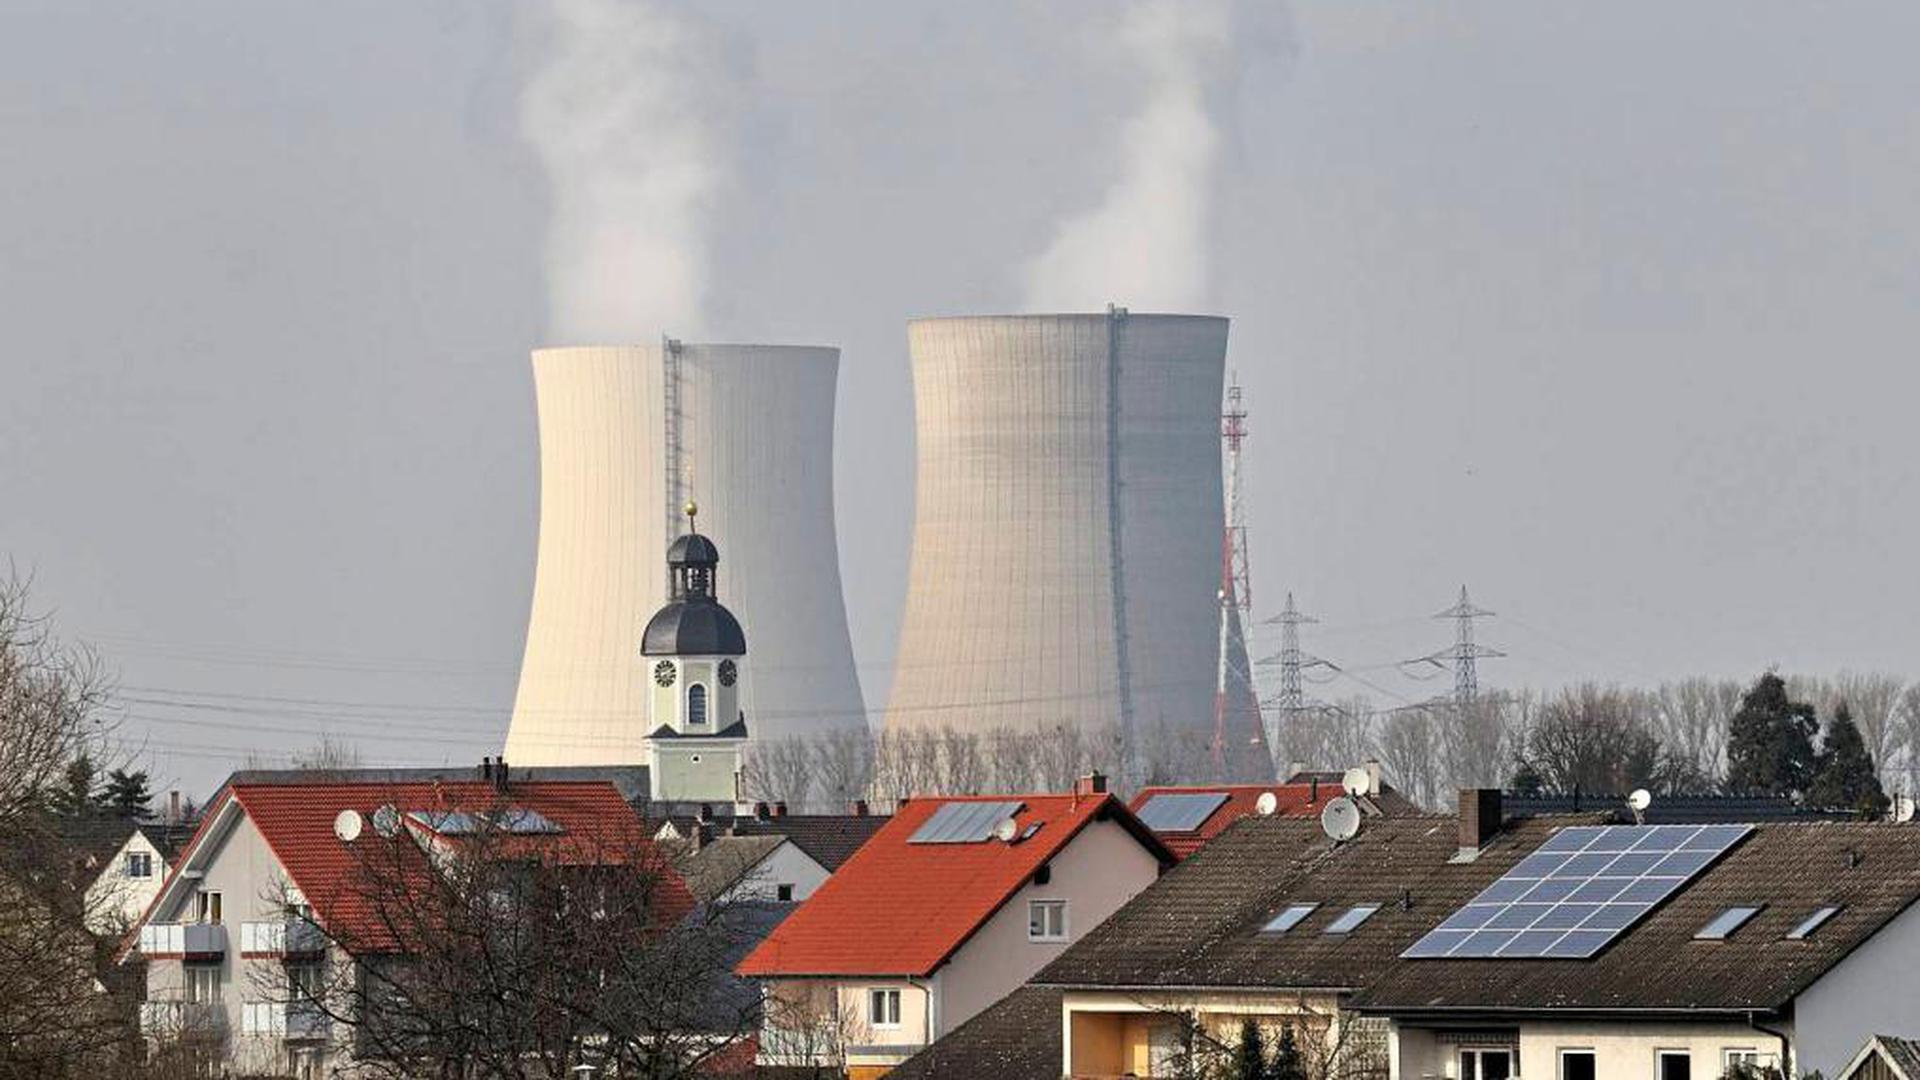 Spätestens Pfingsten 2020 sollen nach Meinung von Philippsburg Bürgermeister Martus die Kühltürme des Kernkraftwerks gesprengt werden. Die Entsorgung „freigemessener mineralischer Abfälle“ ist Stand heute ungeklärt.